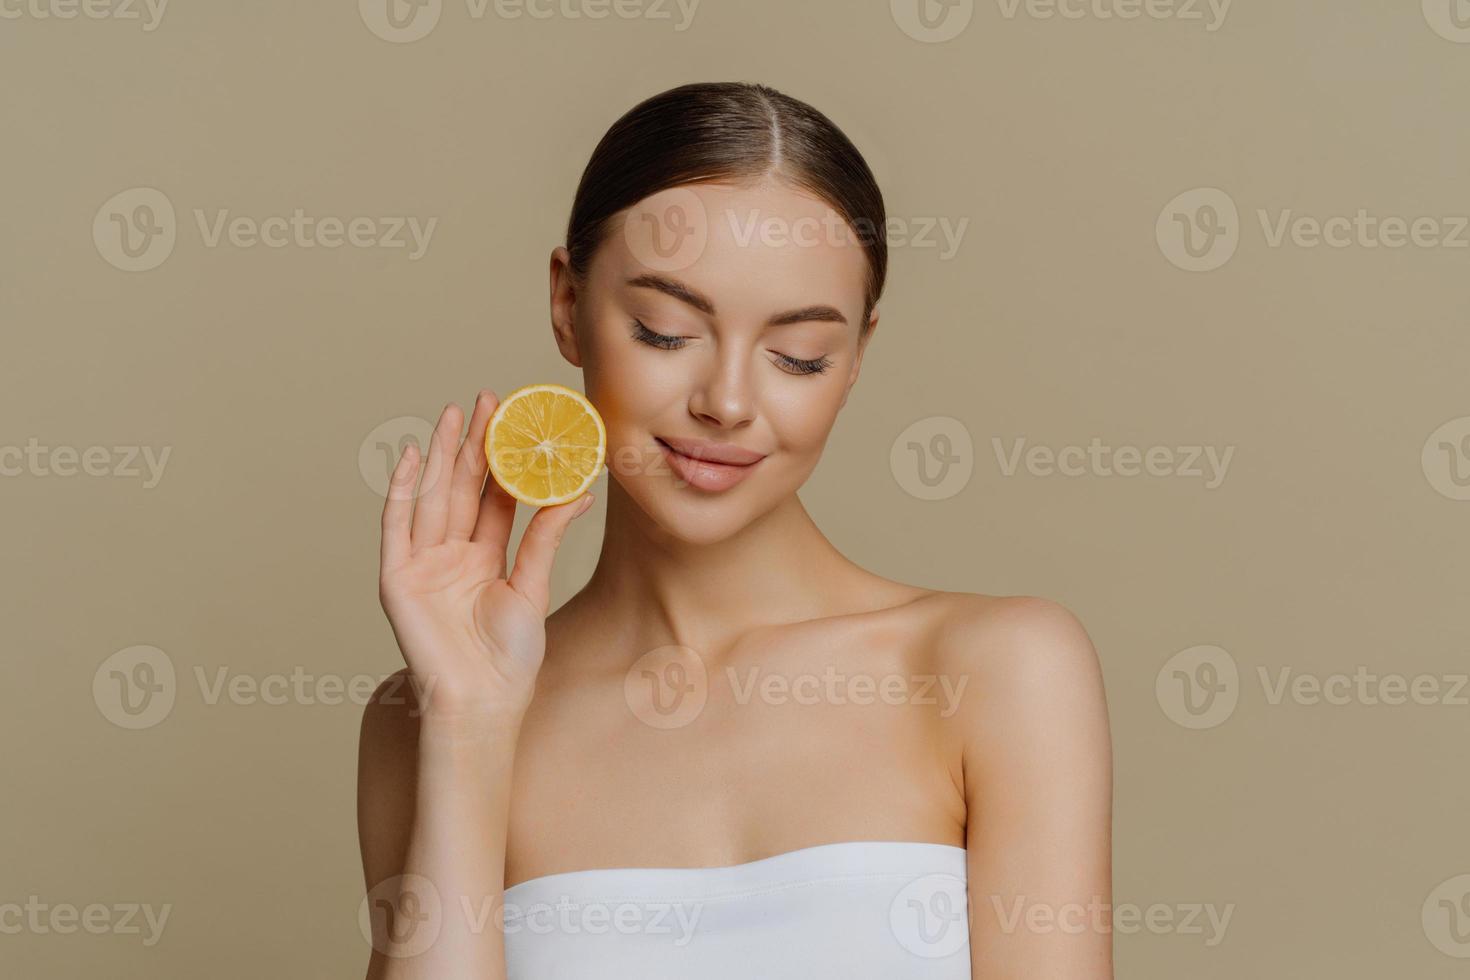 retrato de una encantadora joven morena concentrada sostiene una rodaja de limón fresco recomienda productos de belleza natural prefiere un tratamiento facial orgánico natural envuelto en toallas de baño posa en interiores foto